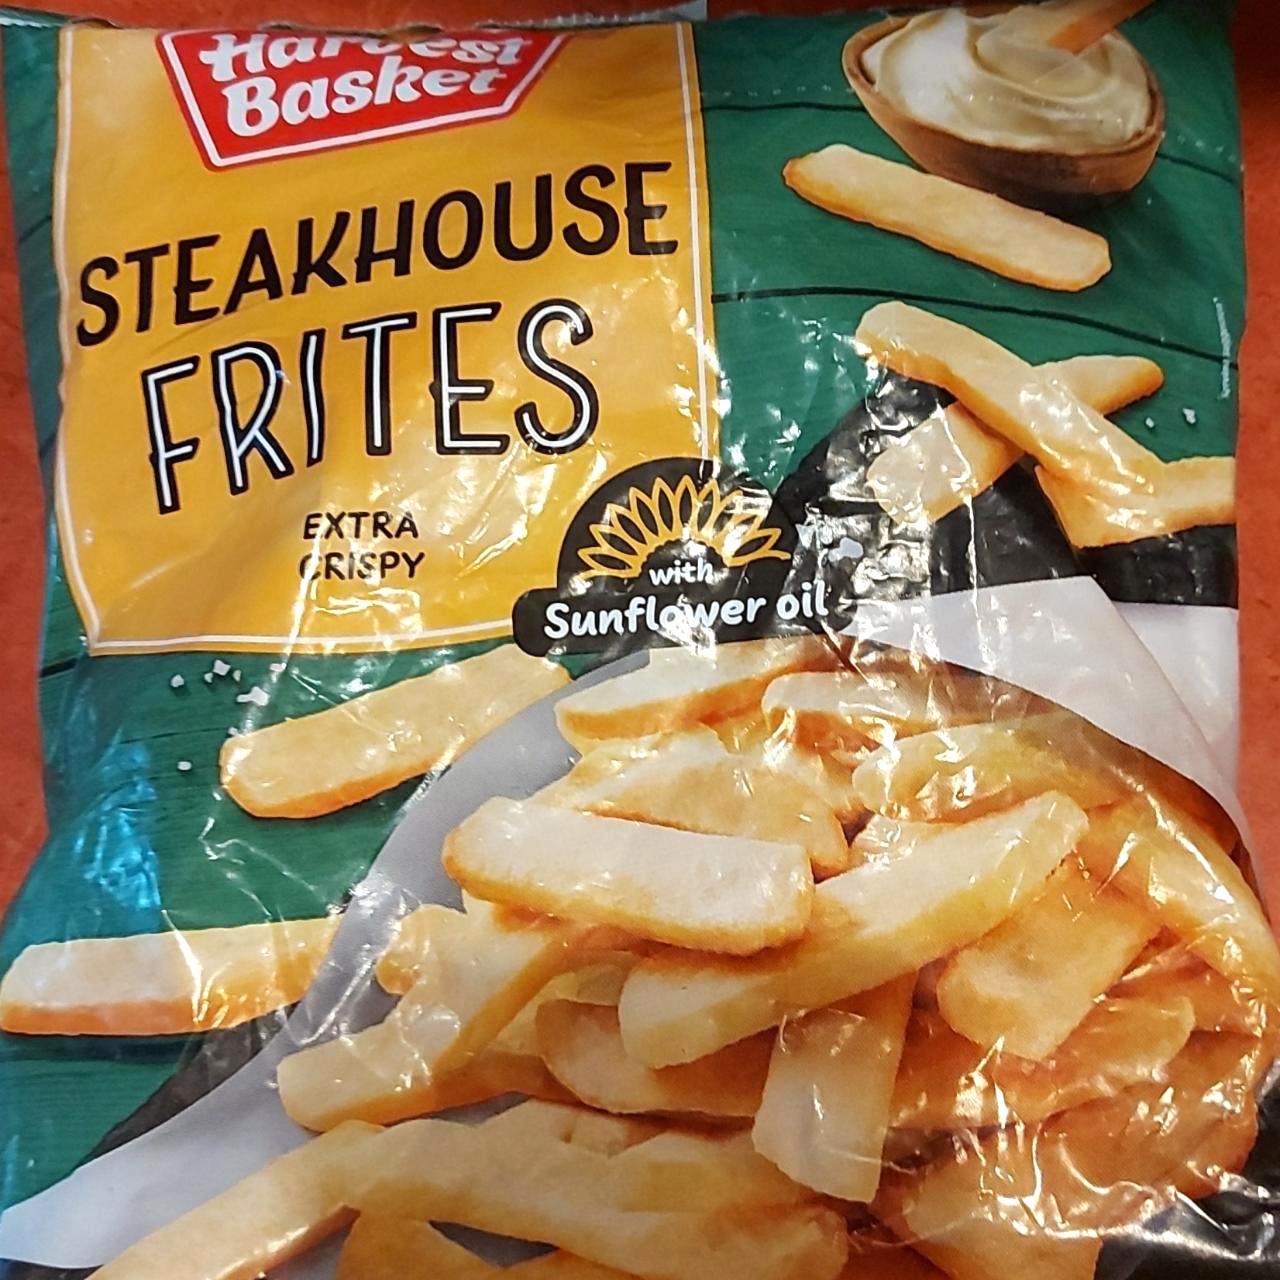 Képek - Steakhouse frites extra crispy Harvest Basket